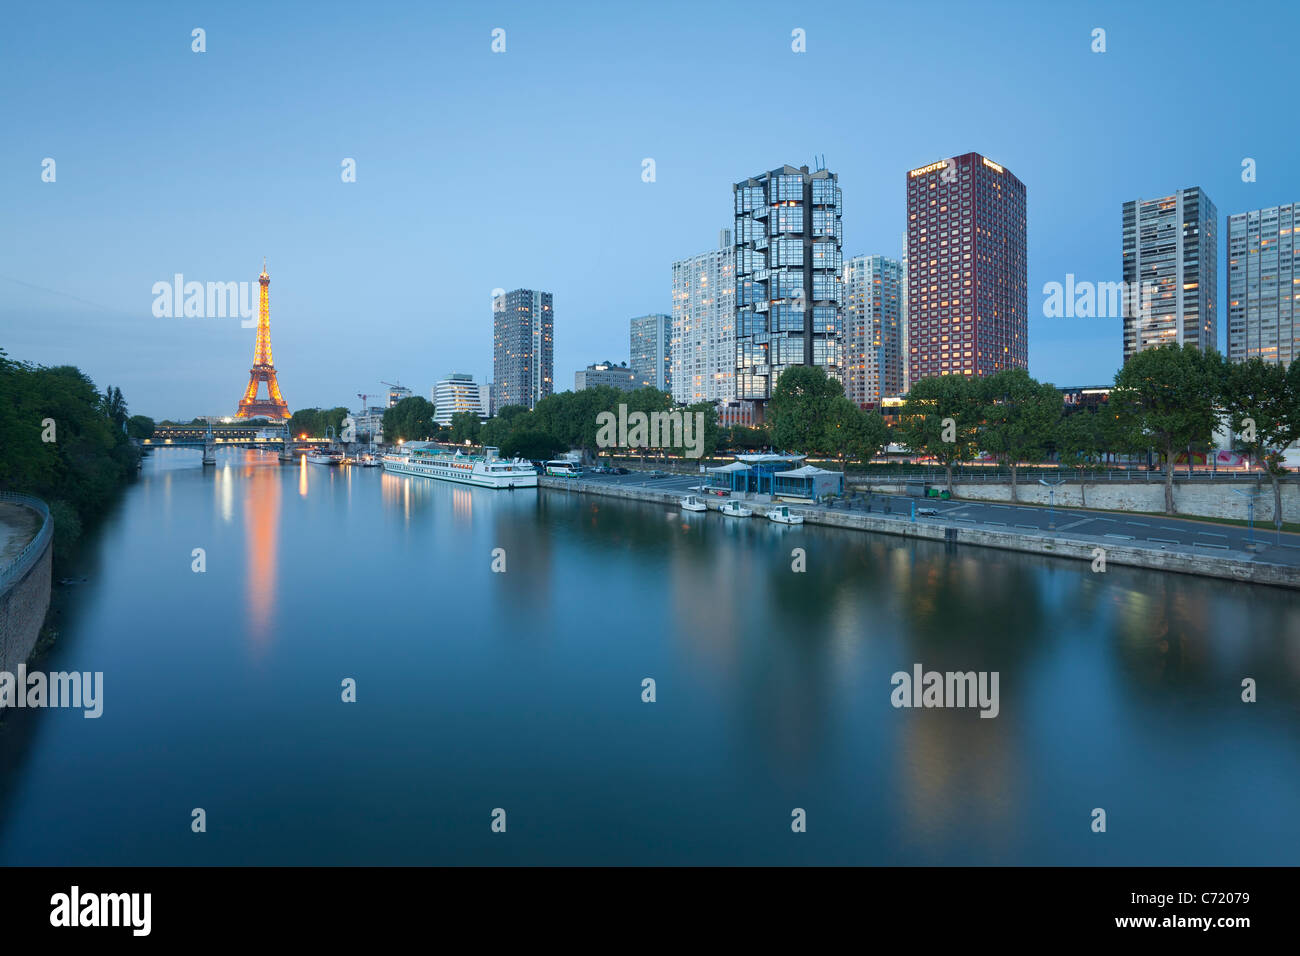 Francia, Parigi, Vista notte del Fiume Senna con edifici ad alta sulla riva sinistra e la Torre Eiffel Foto Stock